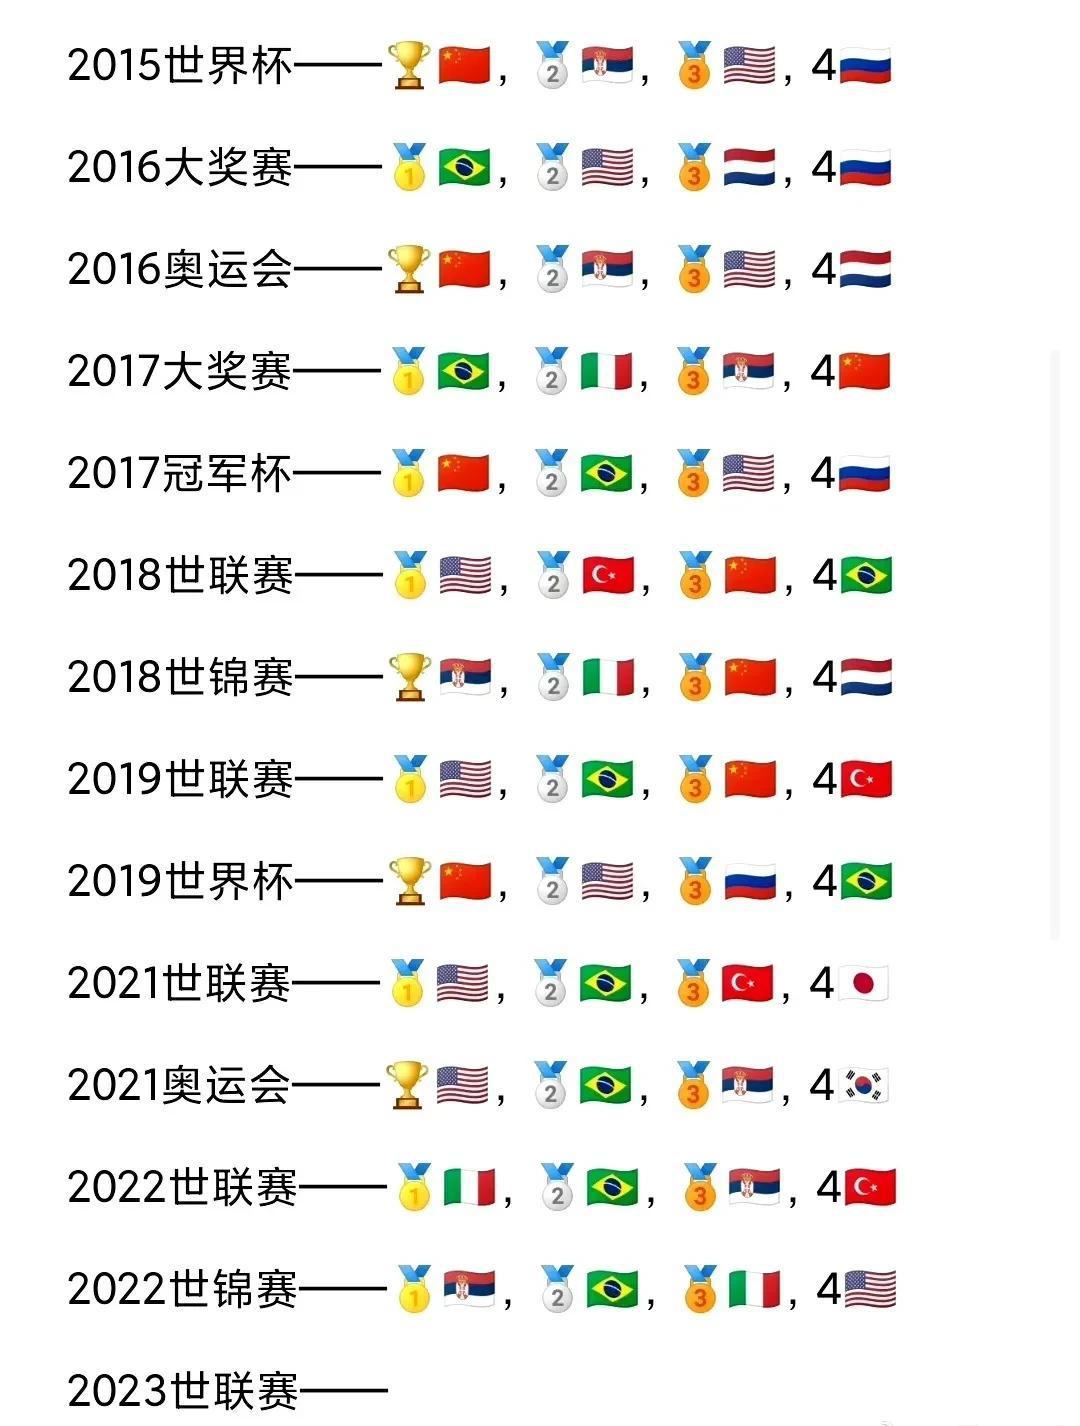 中国女排时隔四年重回世界大赛决赛，中国女排是奥运会、世界杯和冠军杯冠军，就差一座(1)